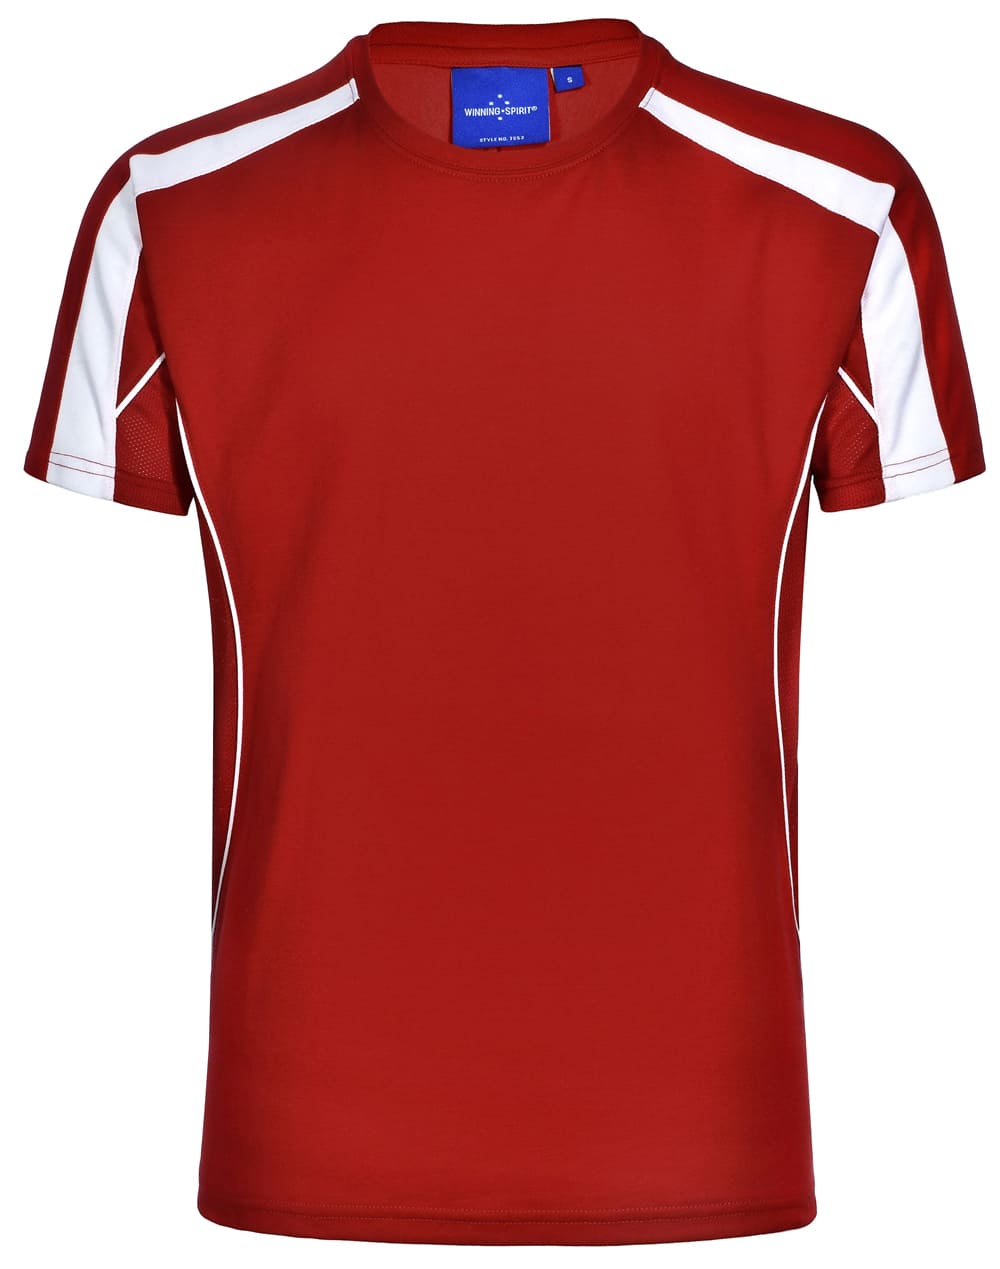 Custom (Black Red) Legend Ladies Short Sleeve Tee Shirts Online in Perth